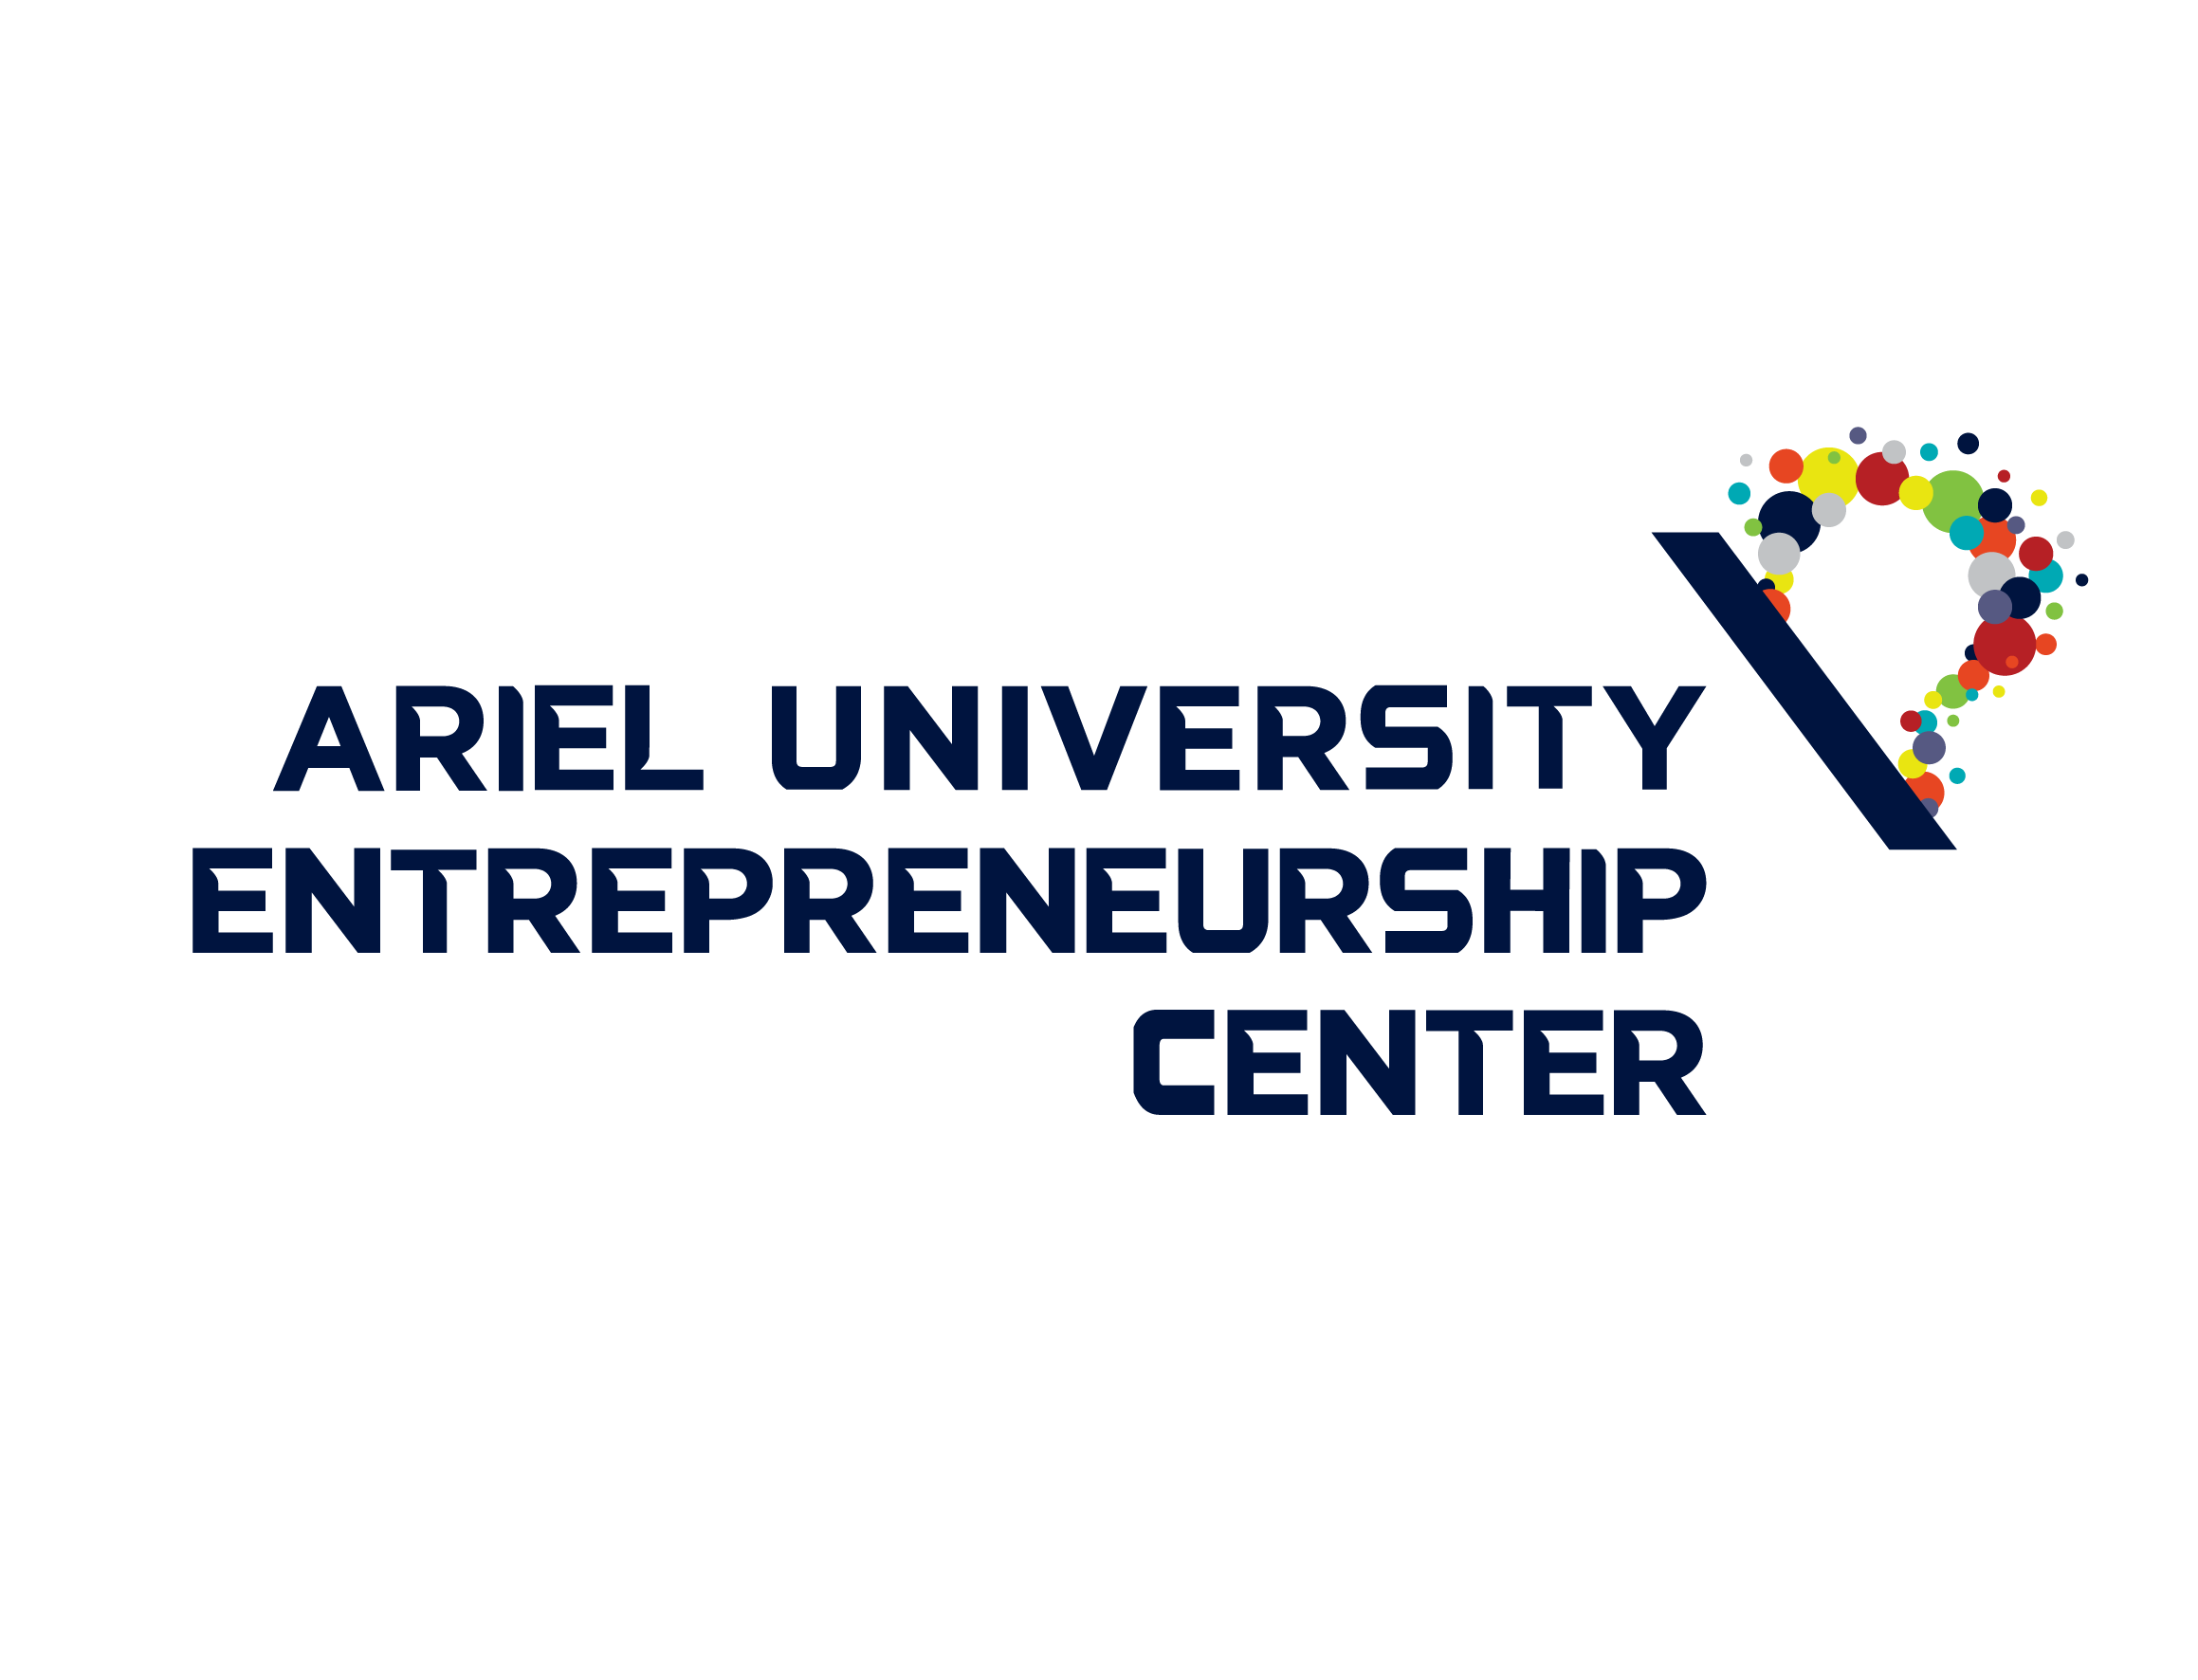 Ariel University Entrepreneurship Center